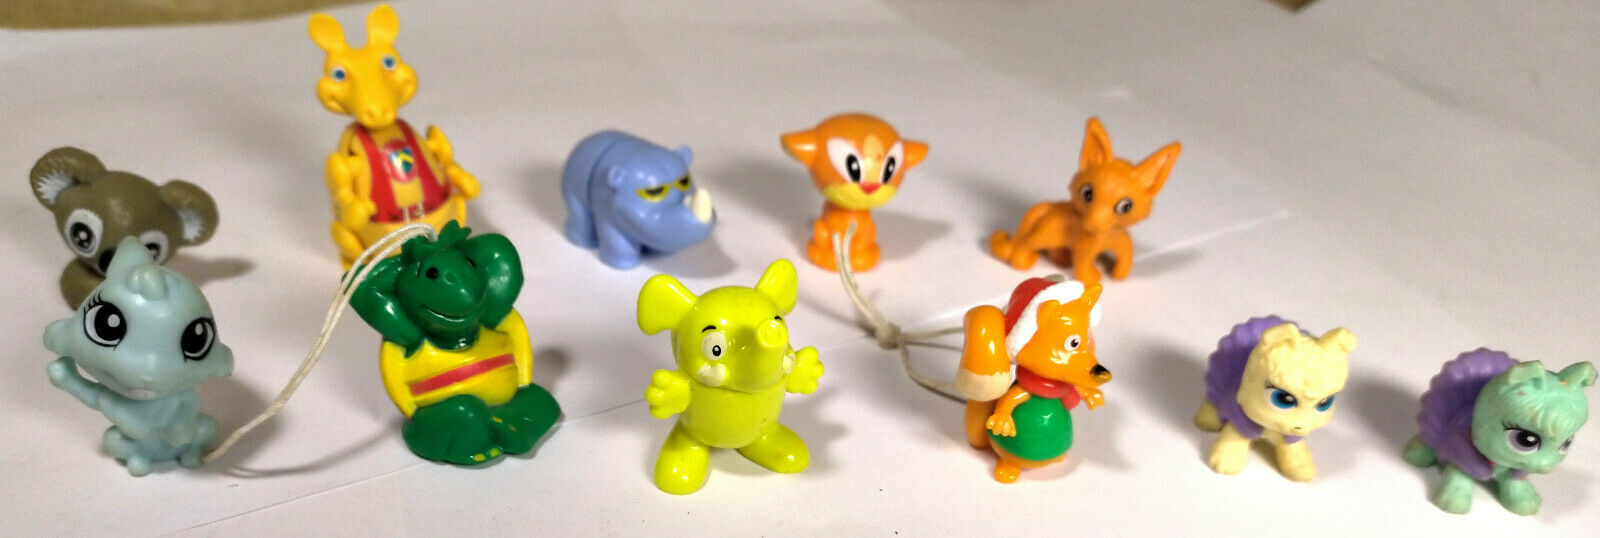 Set Of 11 Different KINDER Surprise Egg Toys Animals K001